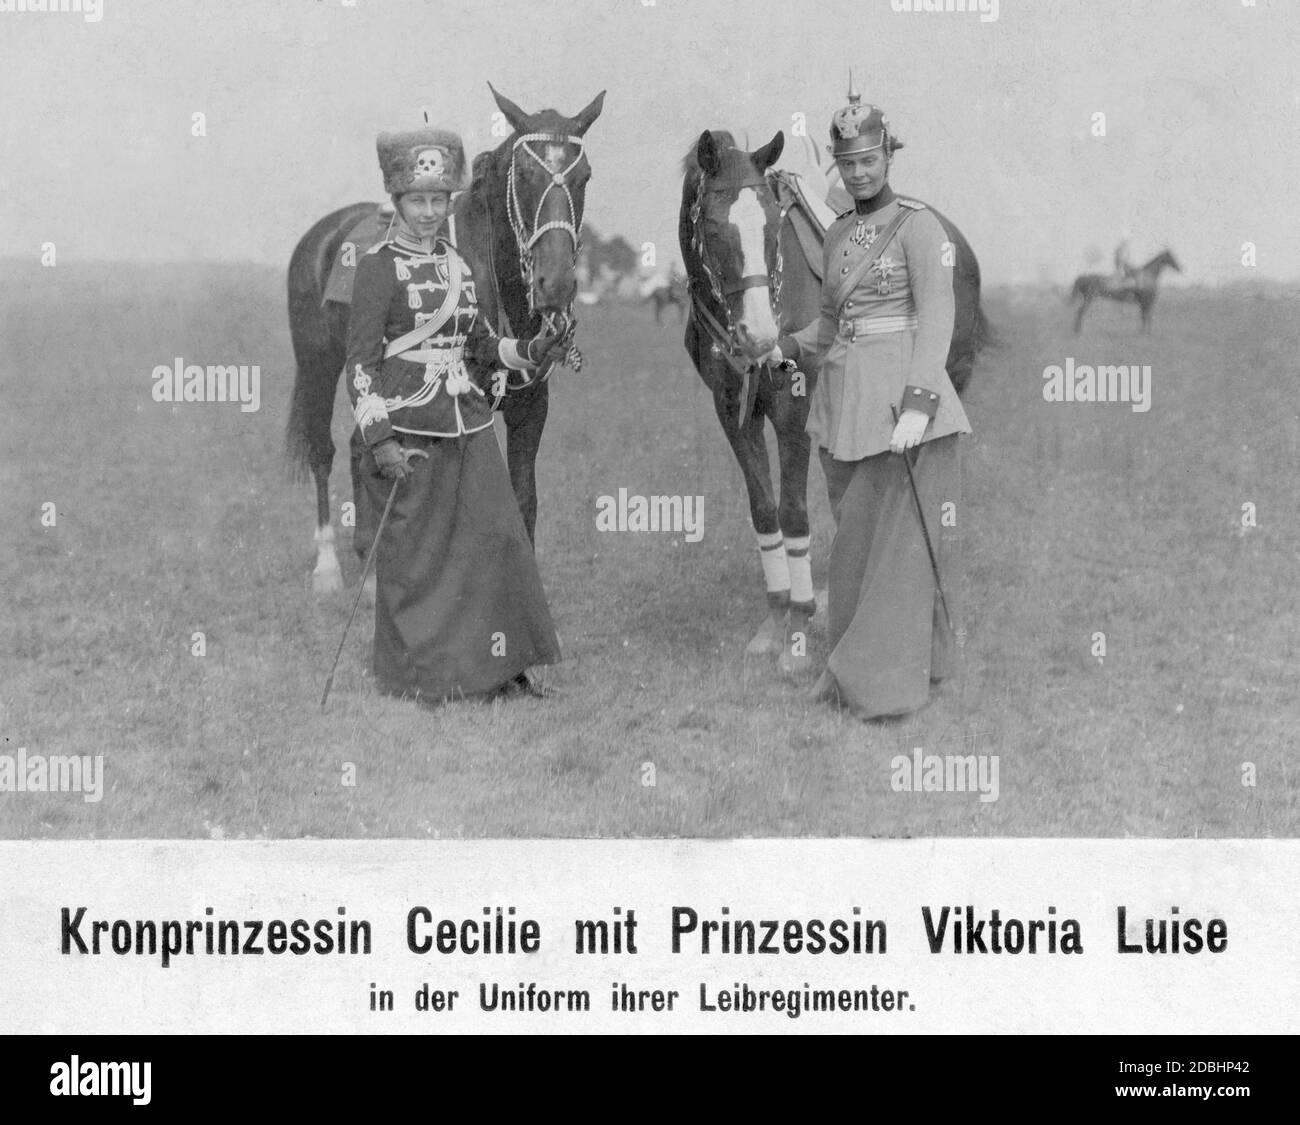 'La princesa Viktoria Louise de Prusia (izquierda) y la princesa de la Corona Cecilie de Mecklenburg (derecha) llevan los uniformes de sus Regiments salvavidas. Ambas mujeres eran jefes de regimientos, Viktoria Louise era la cabeza de los 2. Leib-Husaren-Regiment ''Koenigin Viktoria von Preussen'' Nr. 2 y Cecilie fue jefe del Dragoner-Regiment Koenig Friedrich III (2. Schlesisches) 8. Foto del año 1912.' Foto de stock